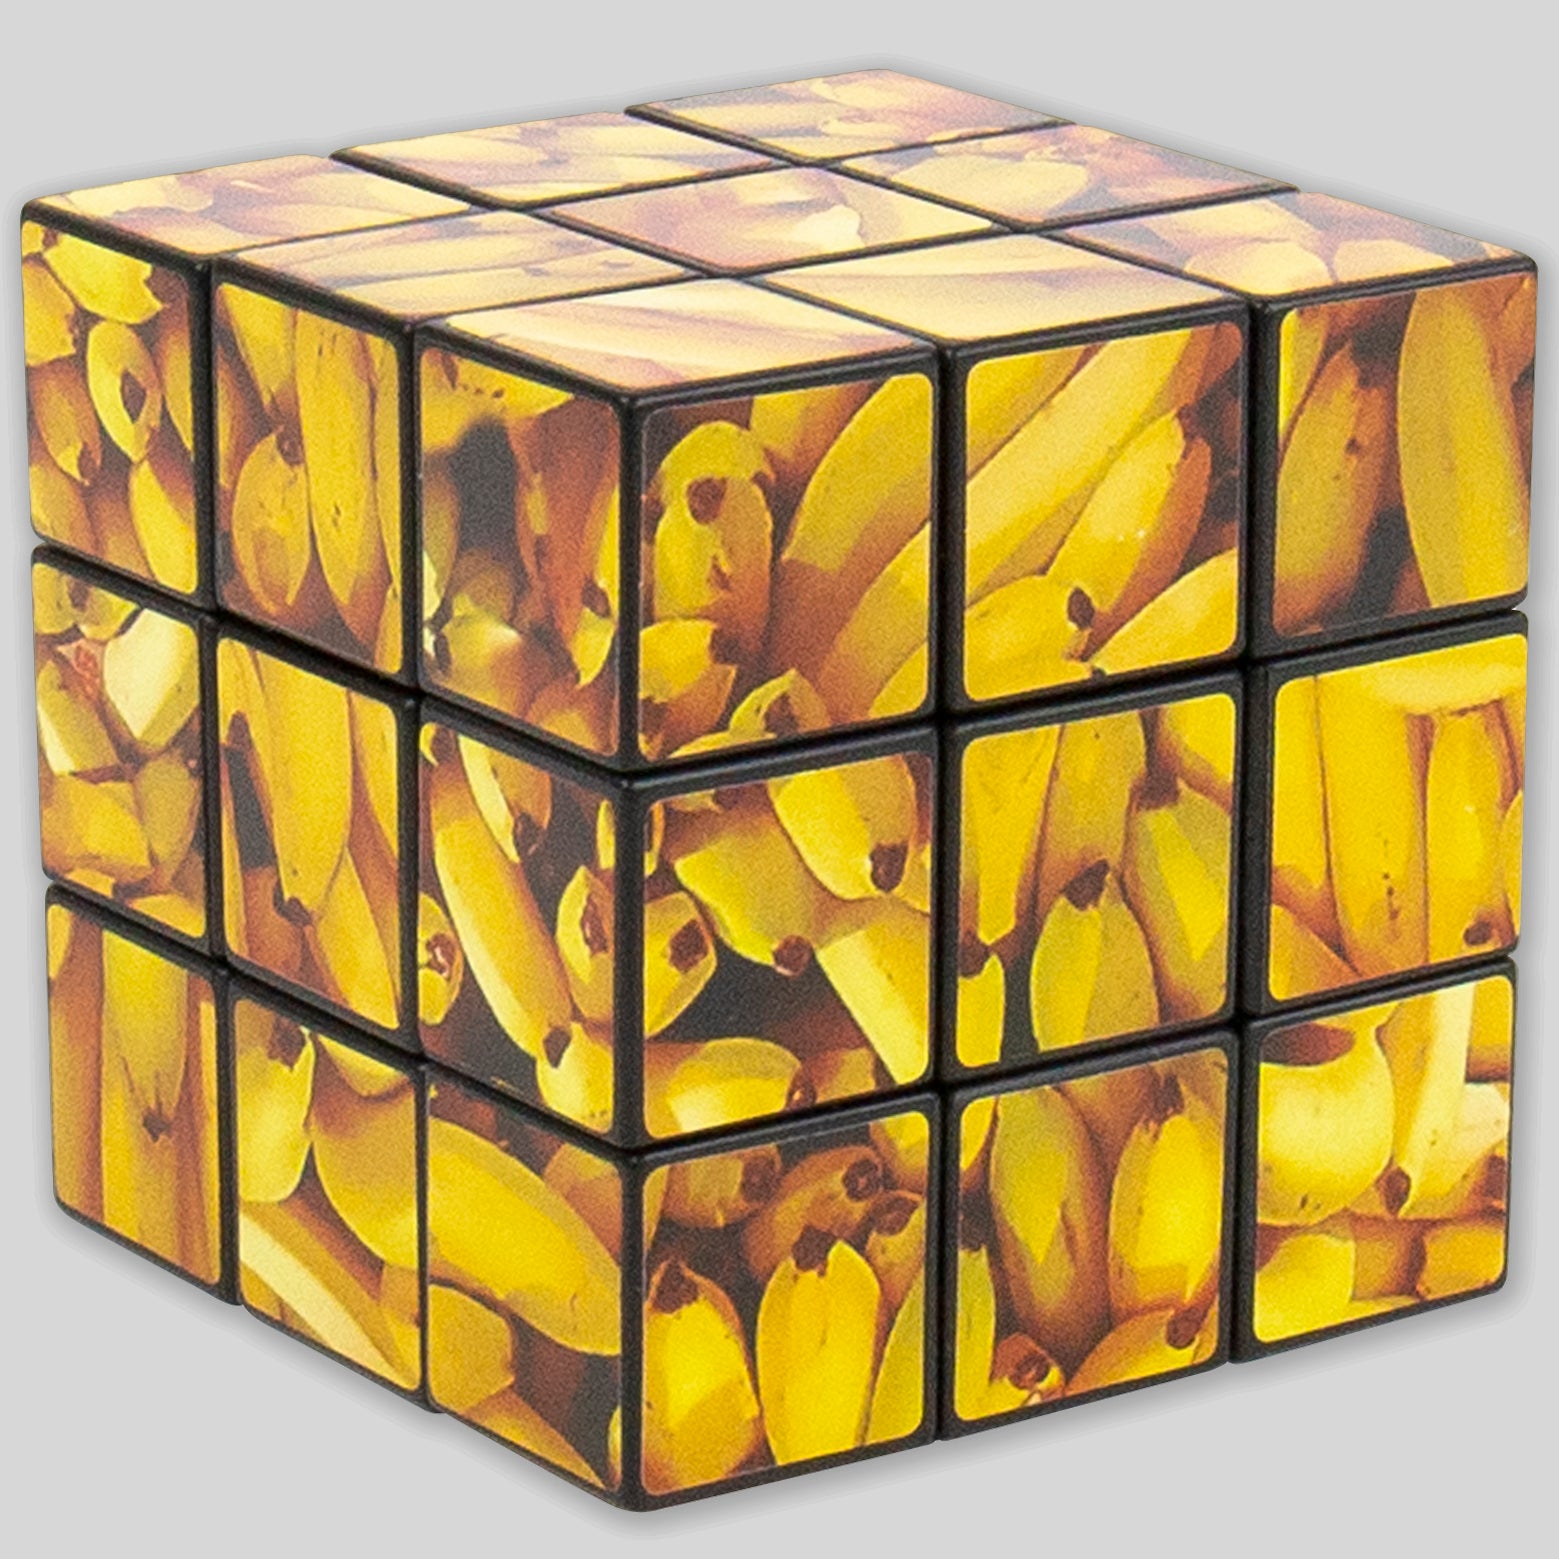 Go Bananas' Puzzle Cube